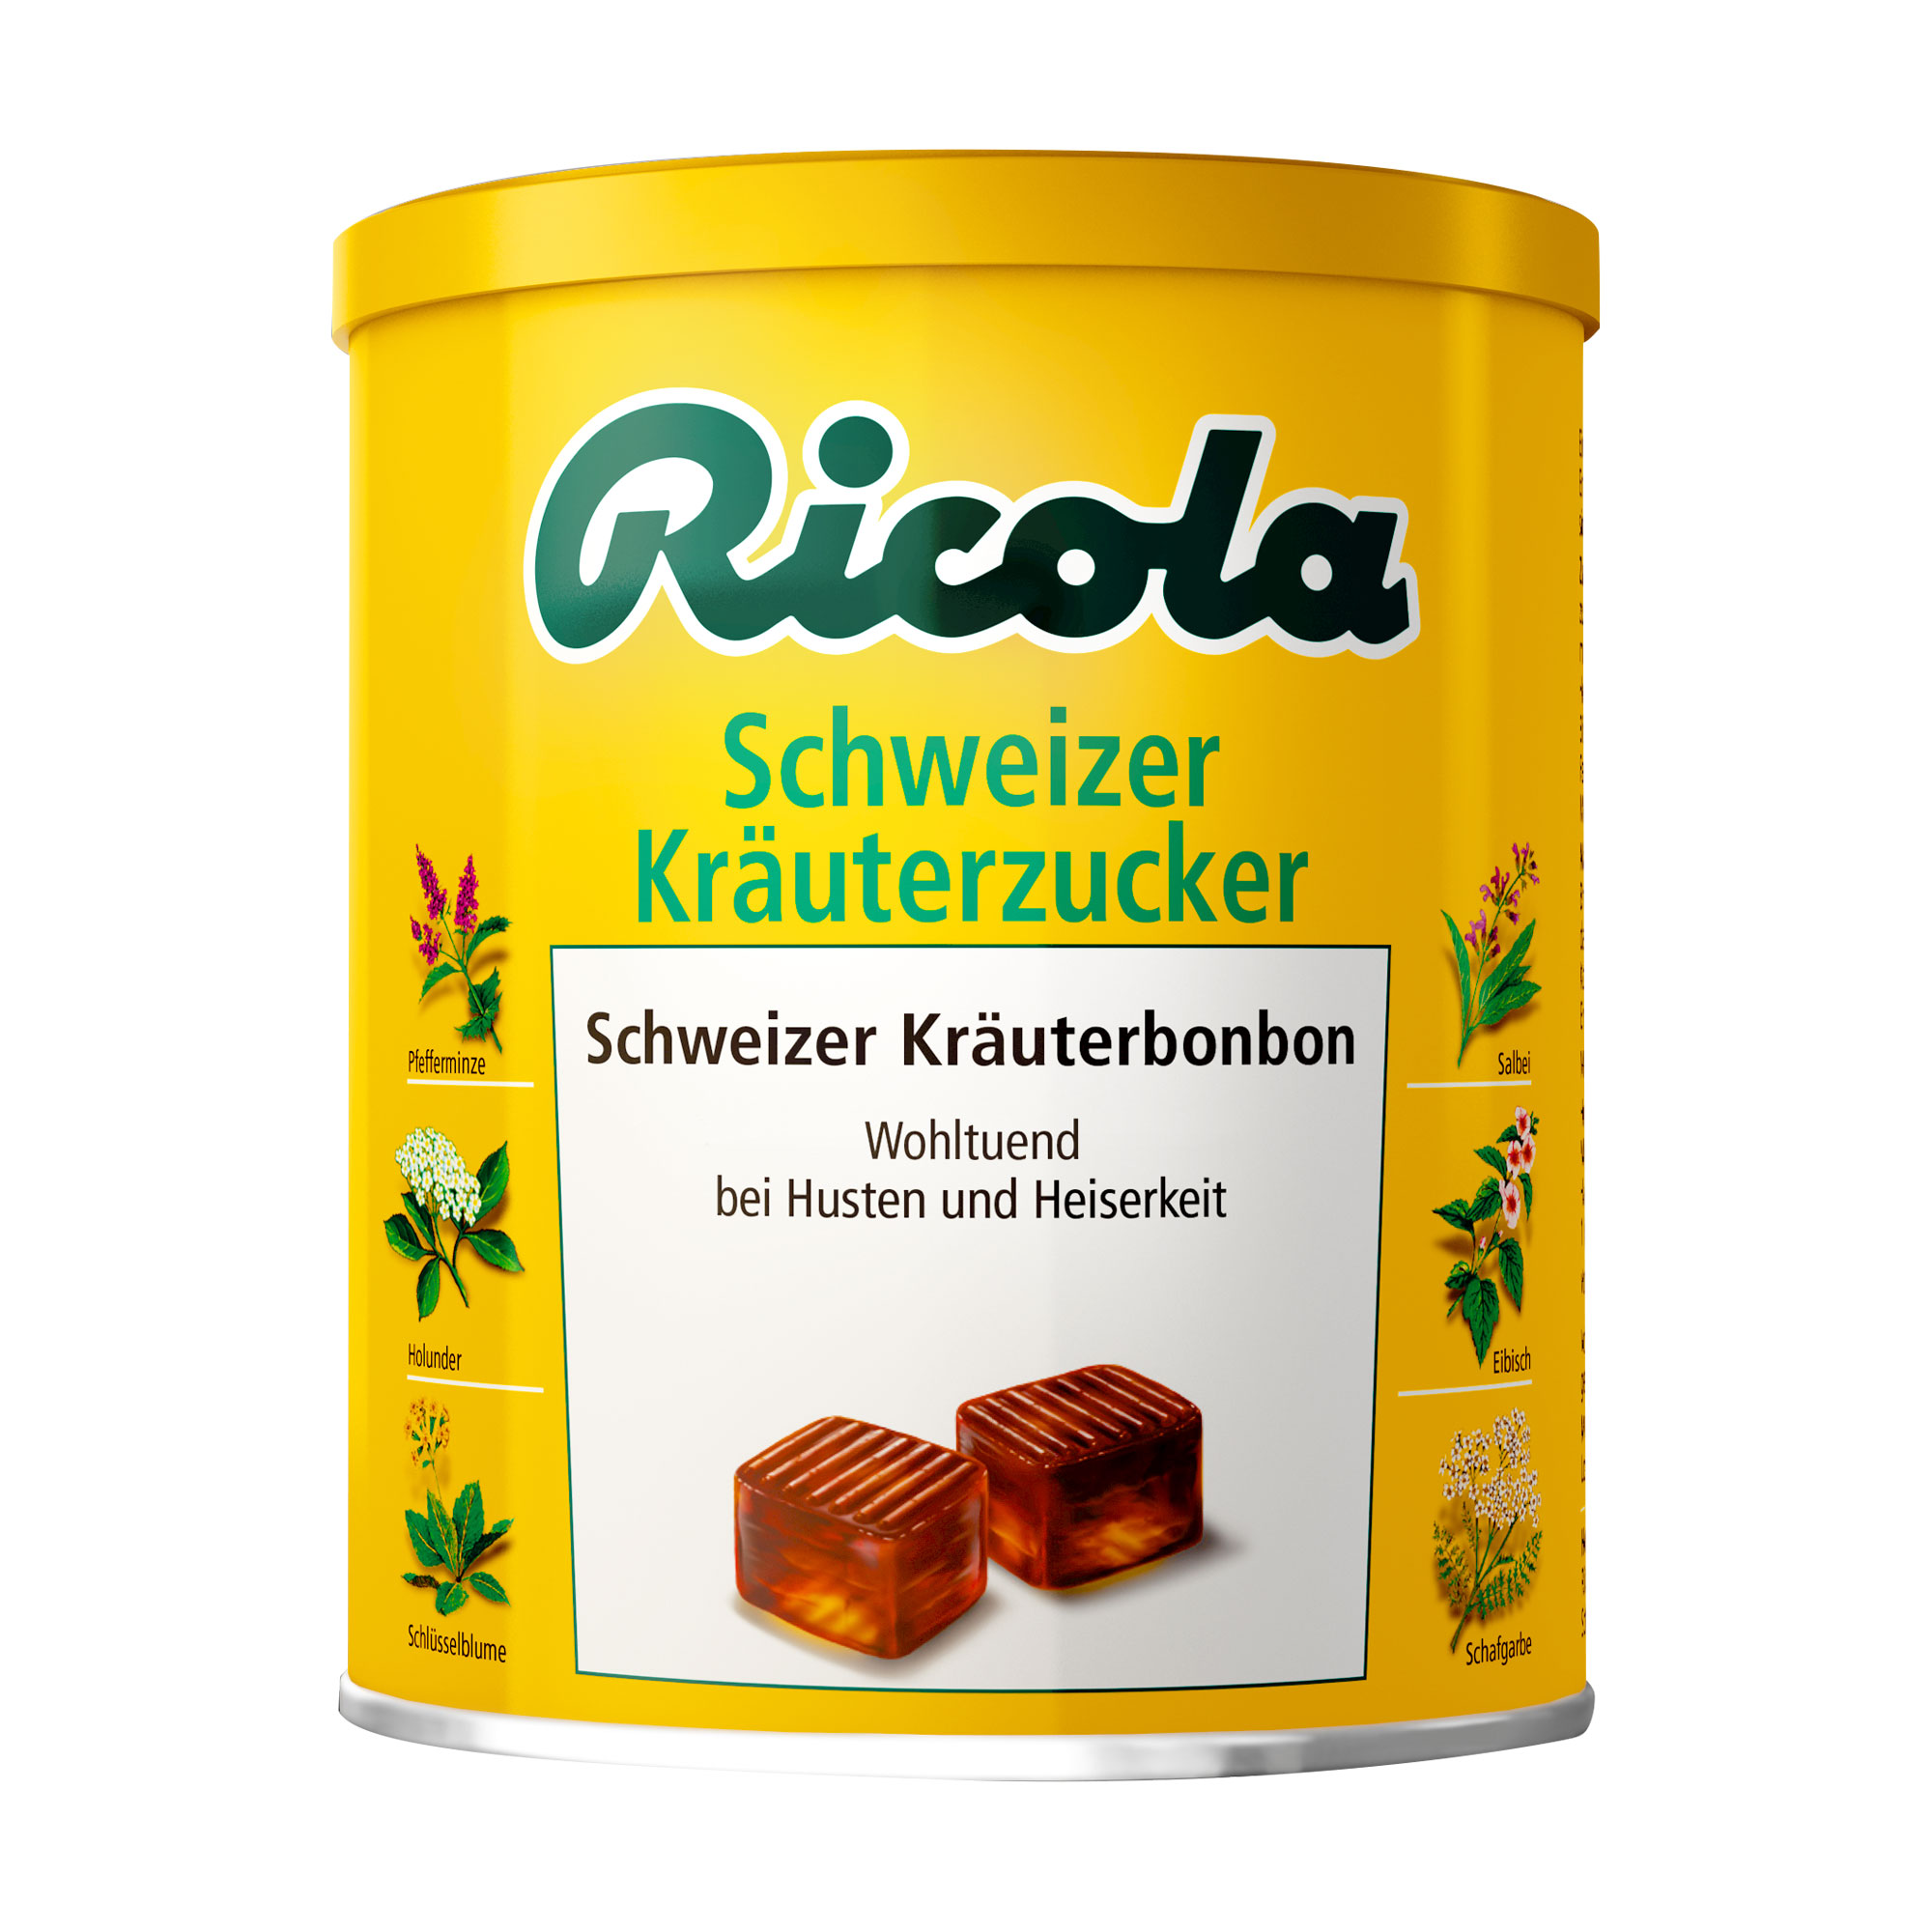 Schweizer Kräuterbonbons mit süßem Geschmack. Wohltuend bei Husten und Heiserkeit.